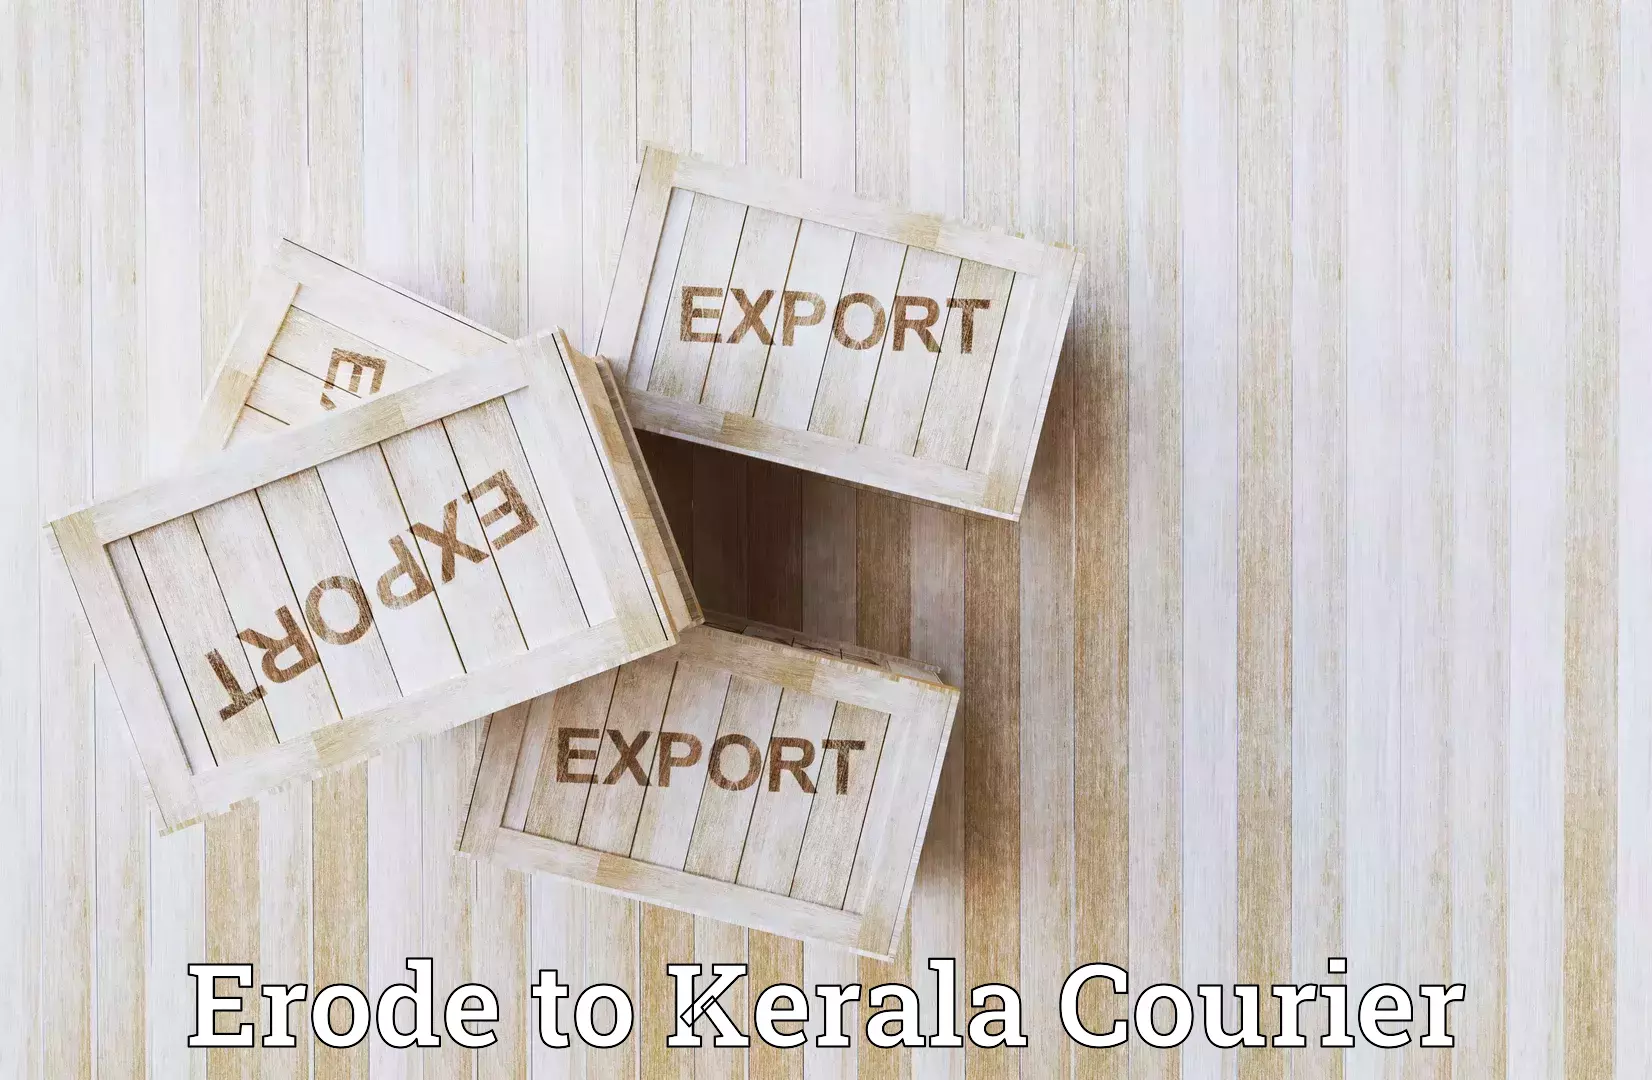 Online shipping calculator Erode to Cochin Port Kochi